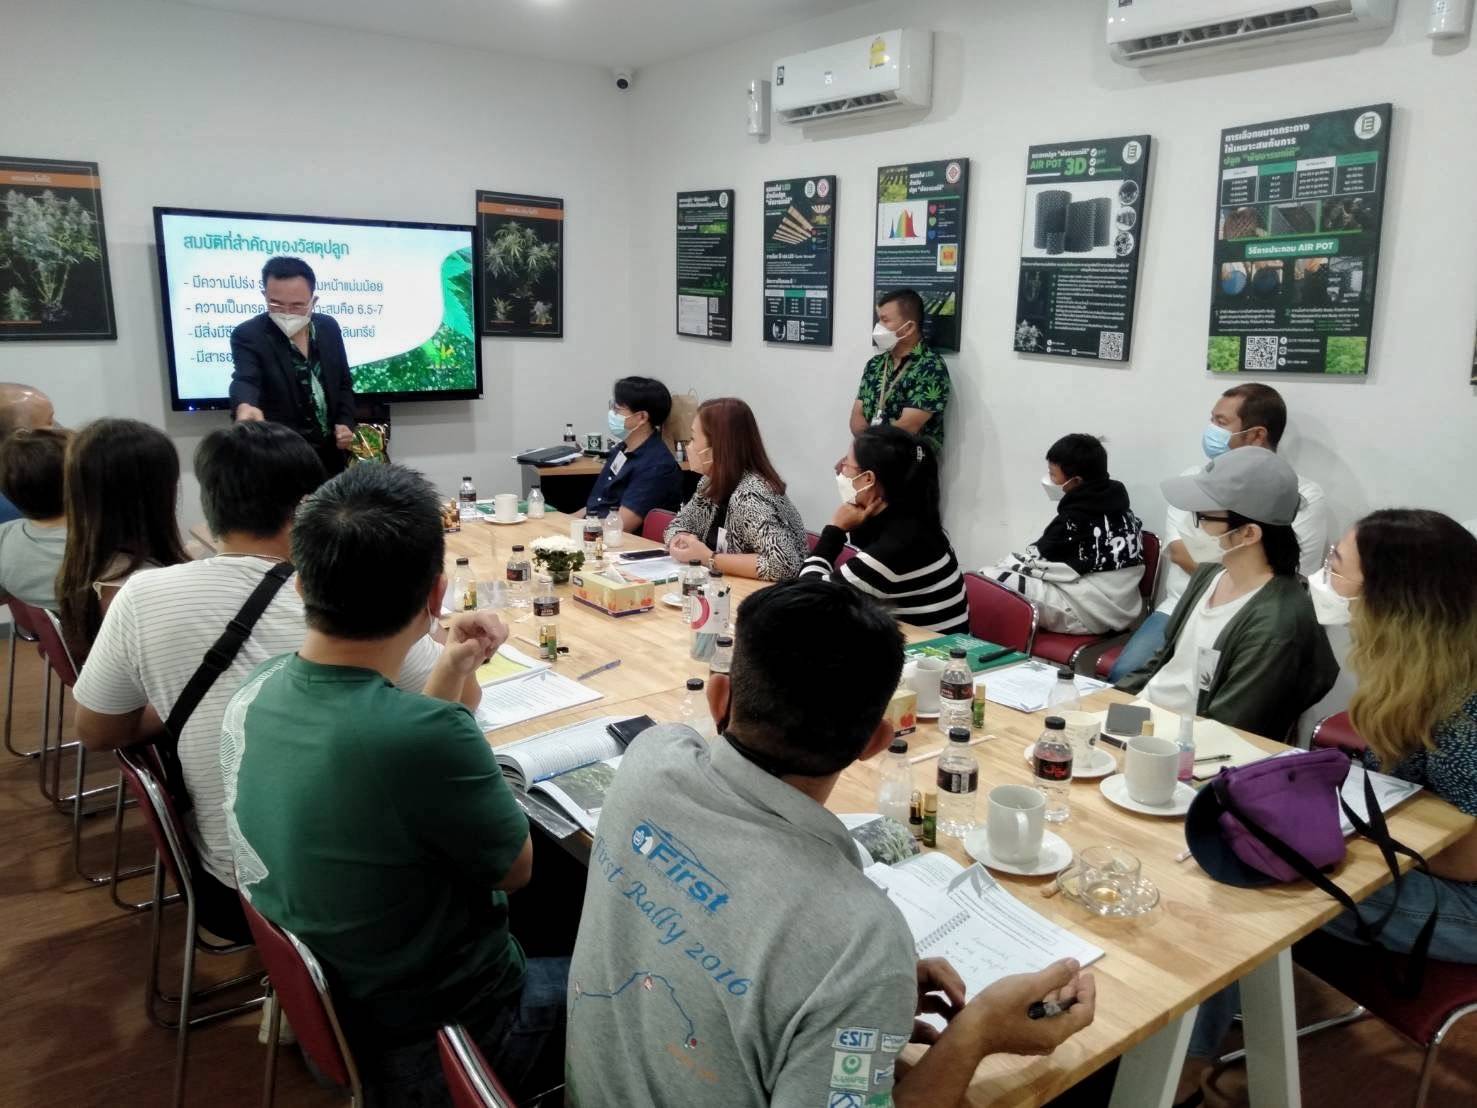 เกษตร จ.นนทบุรี จับมือวิสาหกิจชุมชน Thai Herb Centers